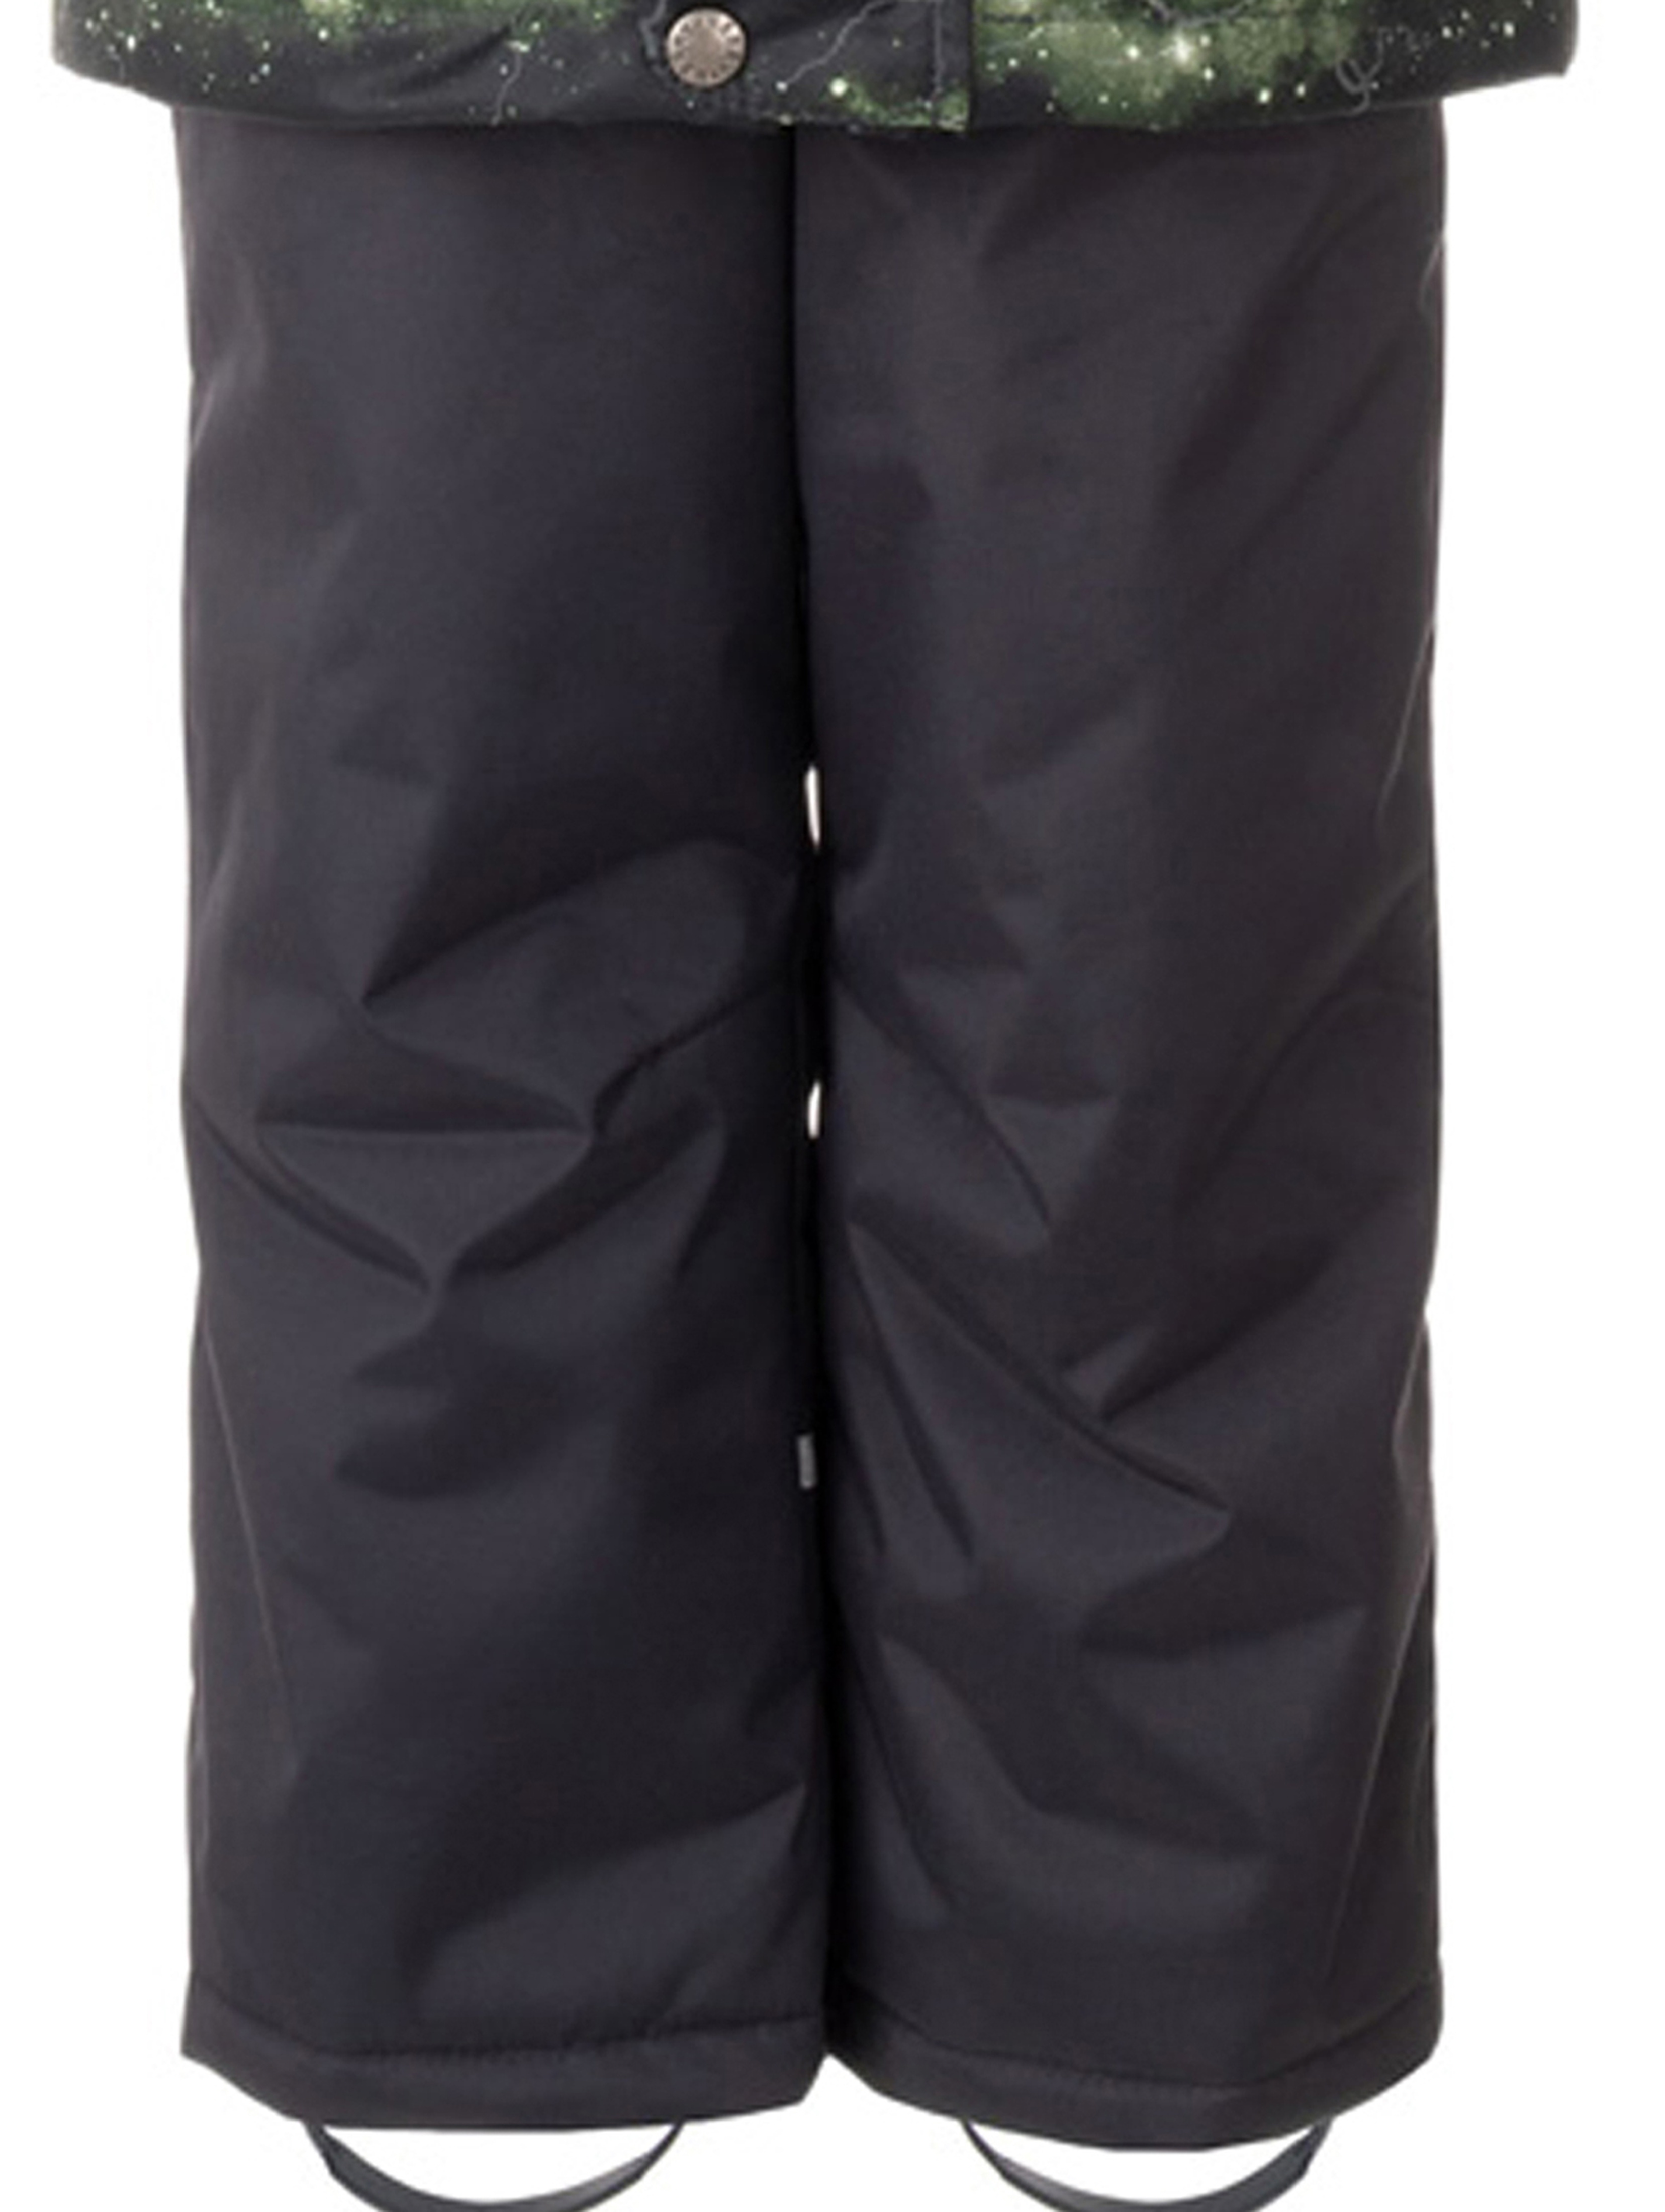 Komplet kurtka + spodnie RON w kolorze czarnym